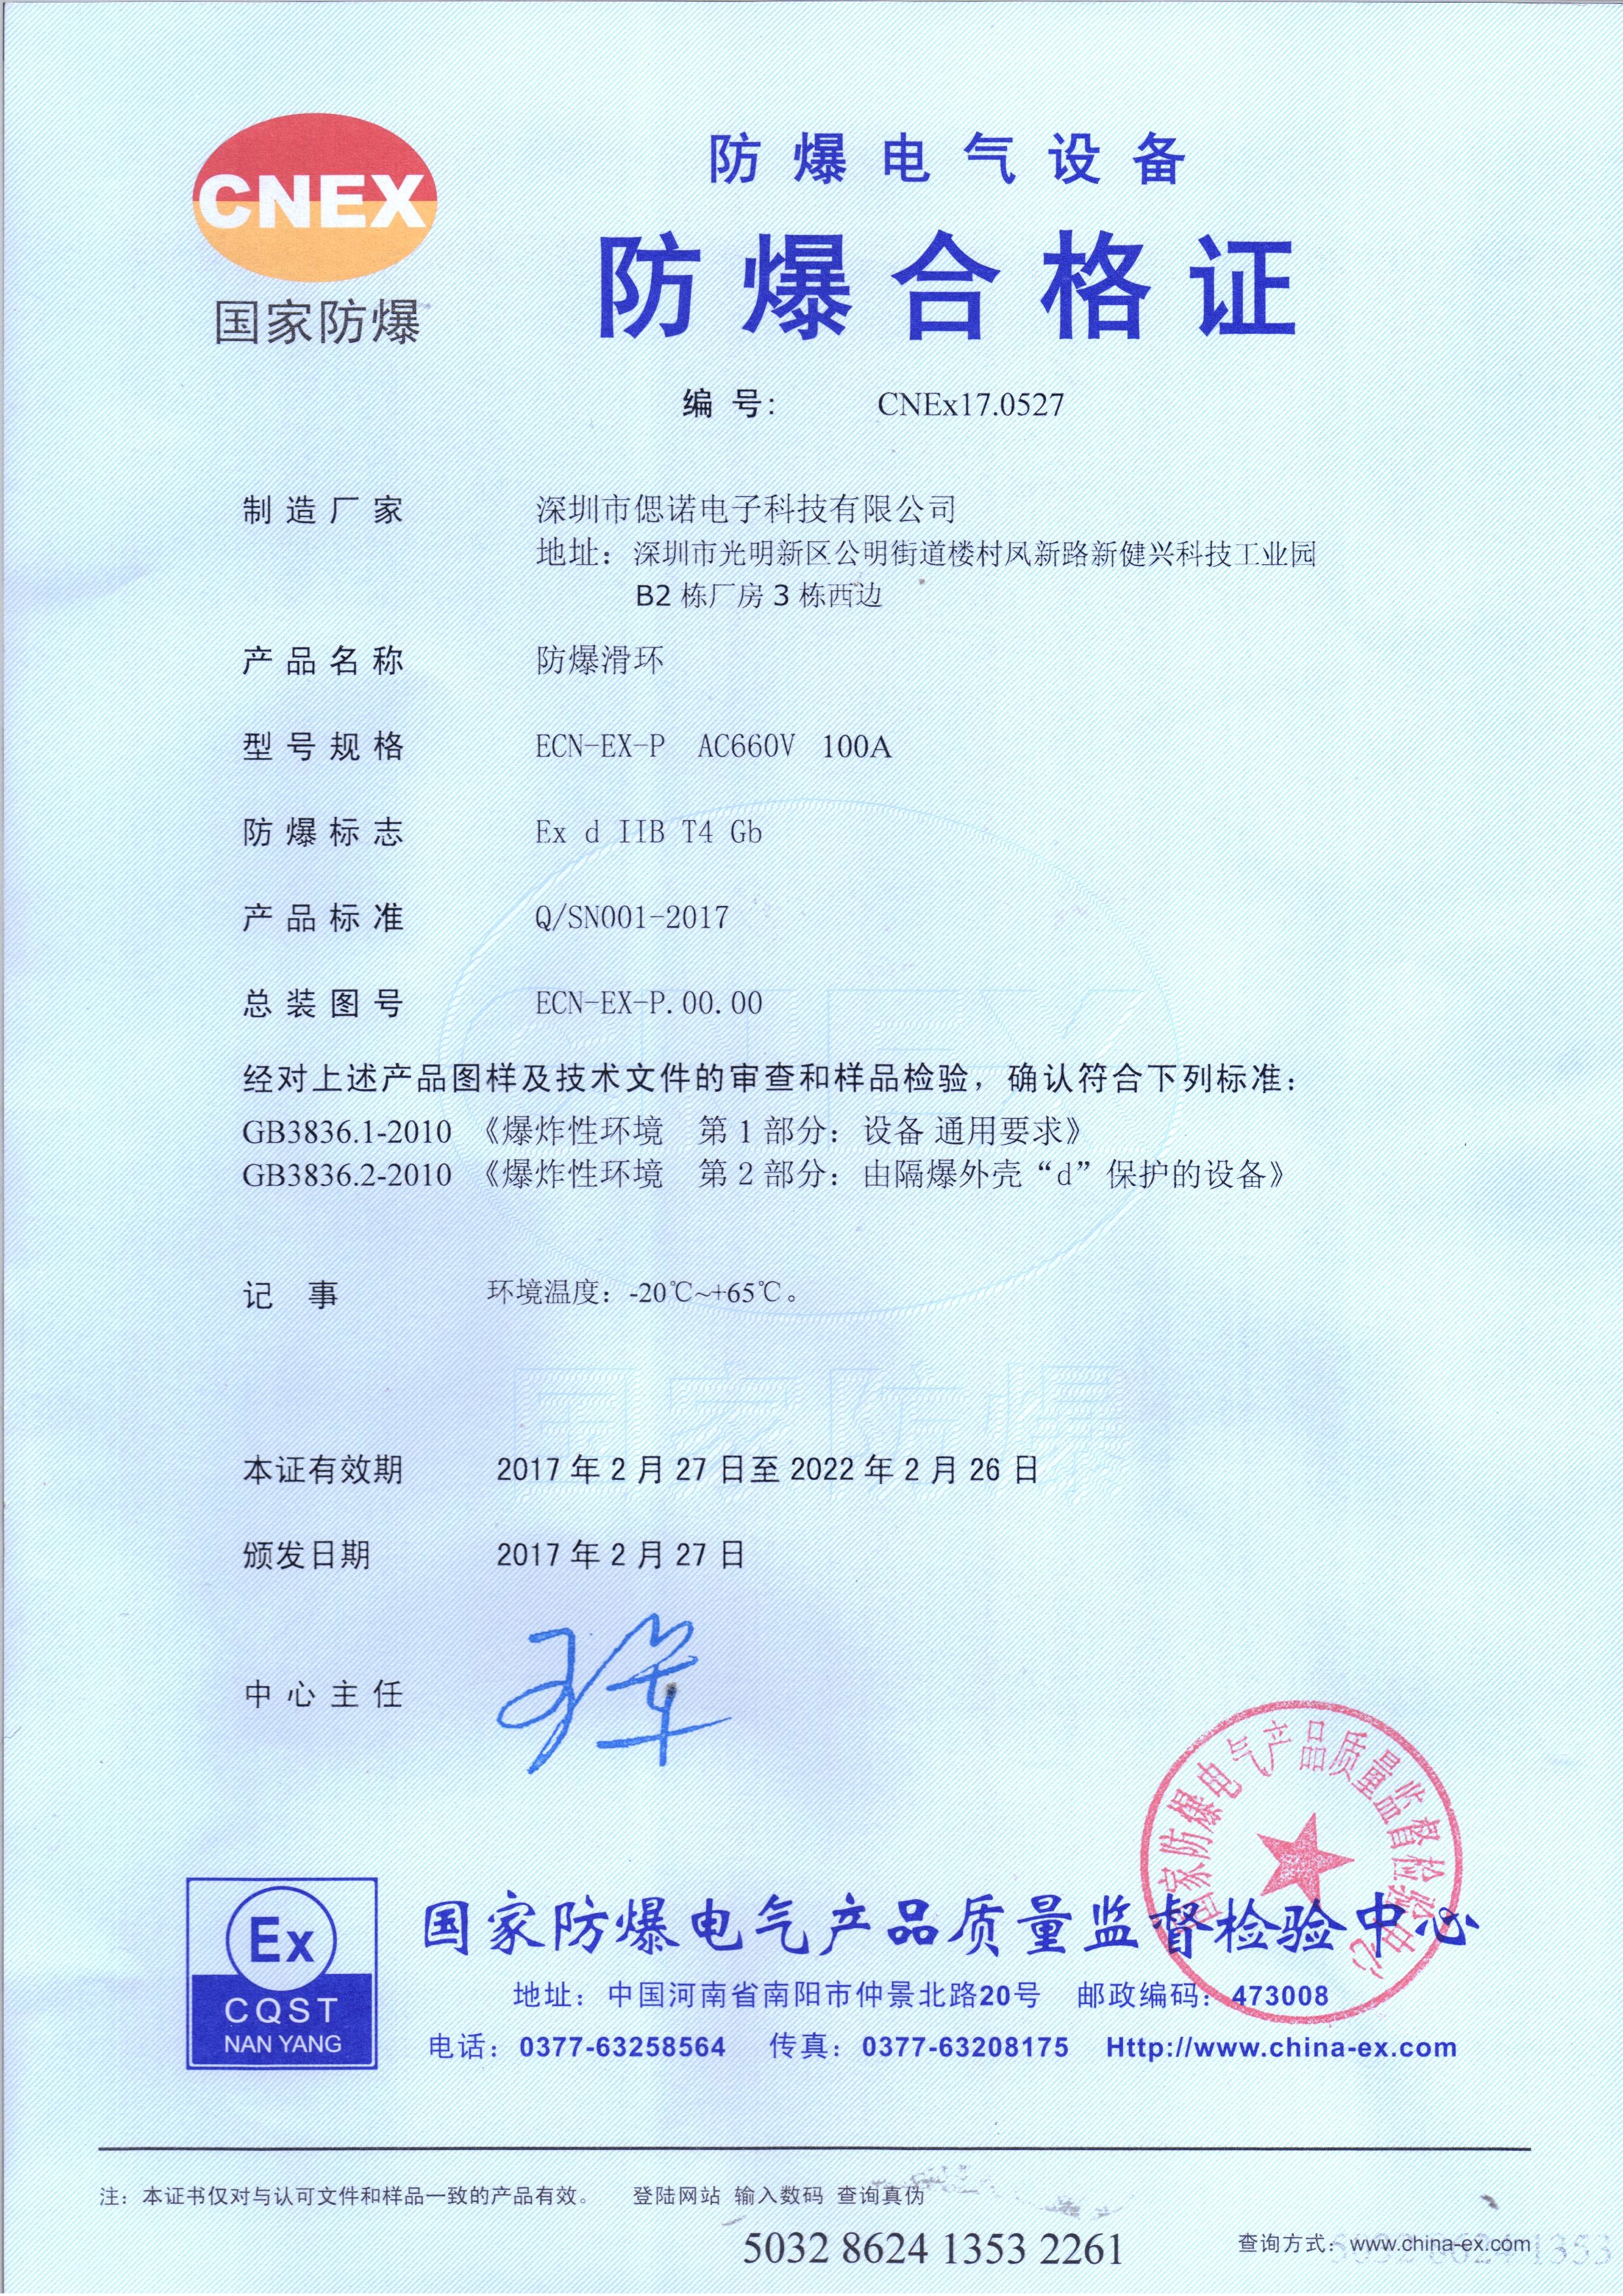 중국 CENO Electronics Technology Co.,Ltd 인증